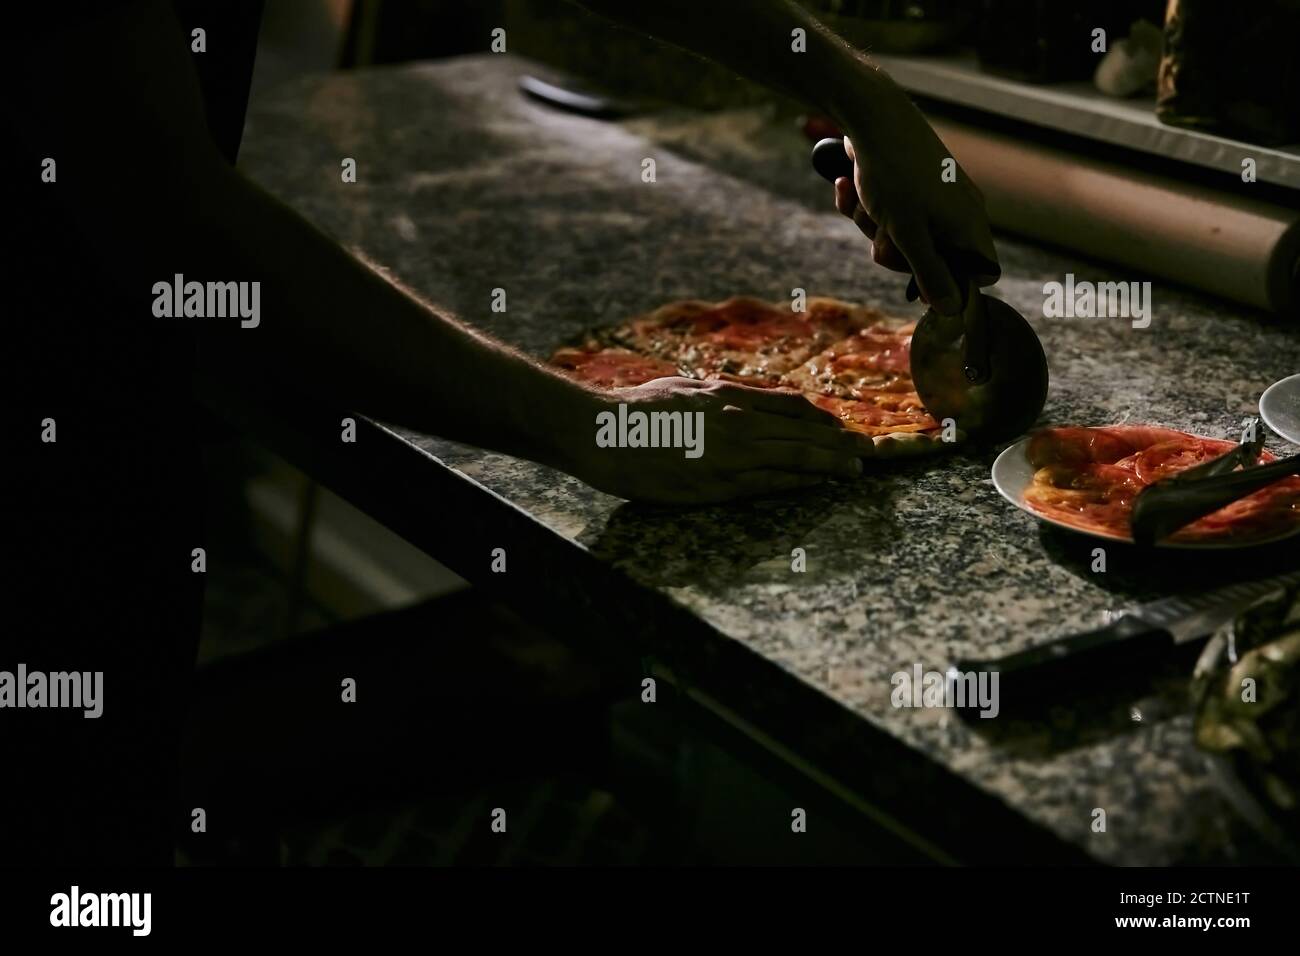 Croiser la pizza anonyme en coupant des pizzas chaudes fraîchement préparées sur un comptoir en marbre tout en travaillant dans la cuisine du restaurant Banque D'Images